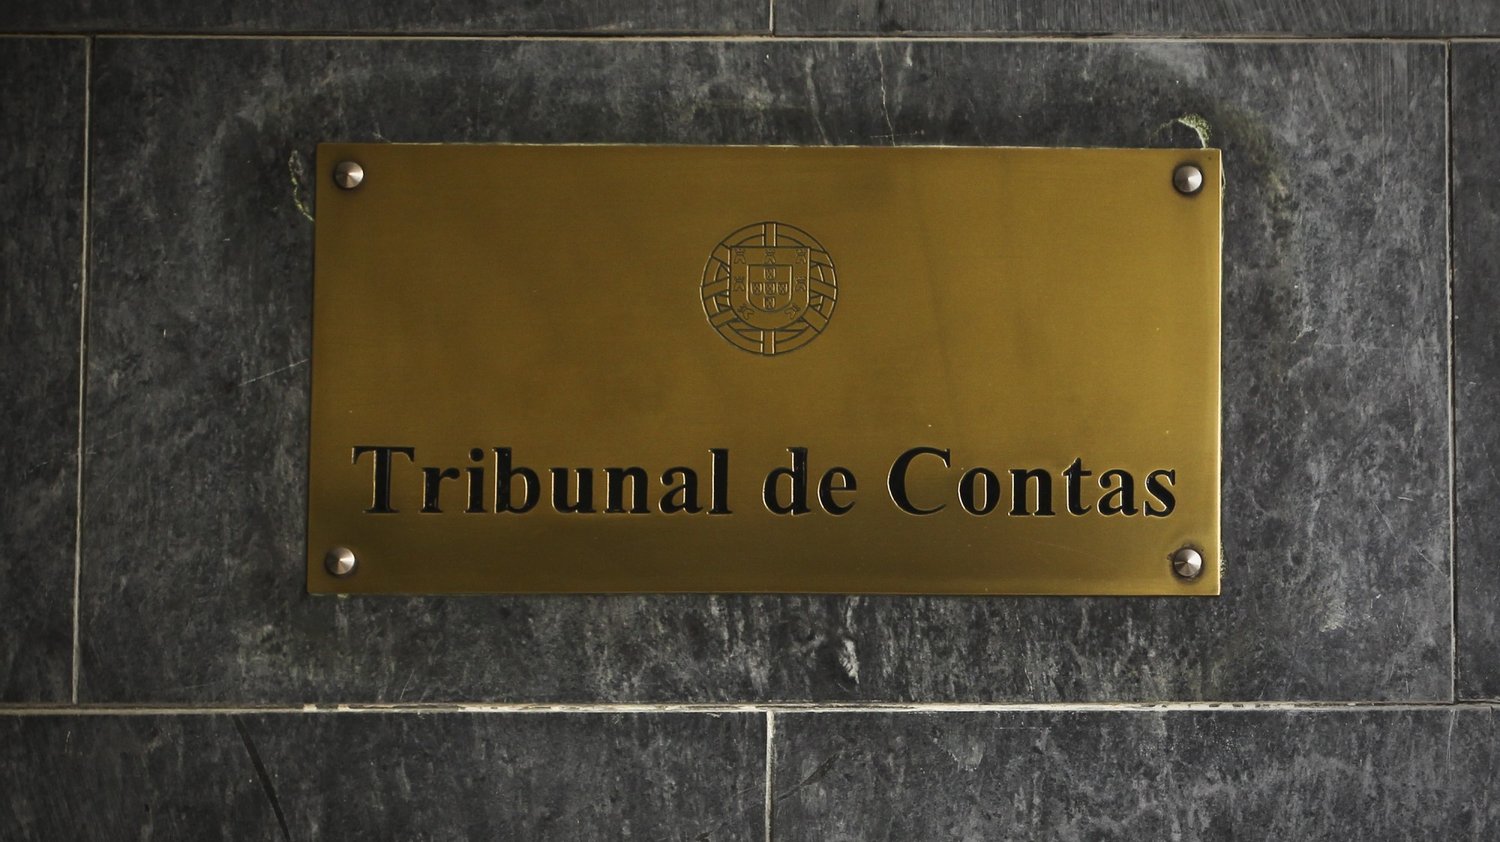 Portugal falha meta de diplomados para 2020, diz Tribunal de Contas